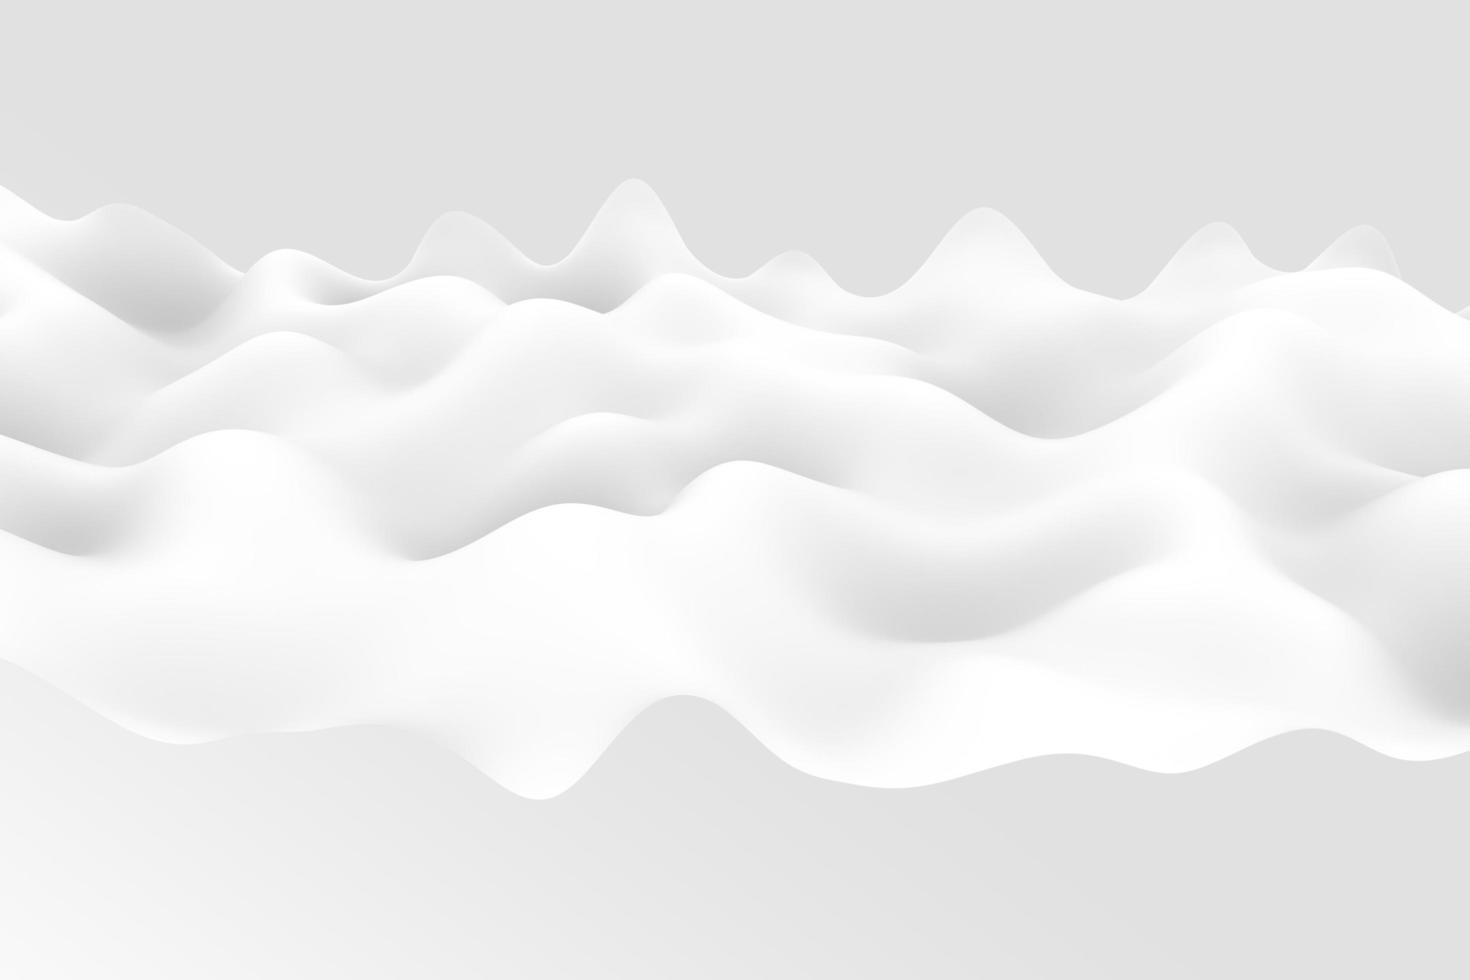 tenero sfondo d'onda sfumato bianco e grigio. rendering 3d di stoffa ondulata astratta foto